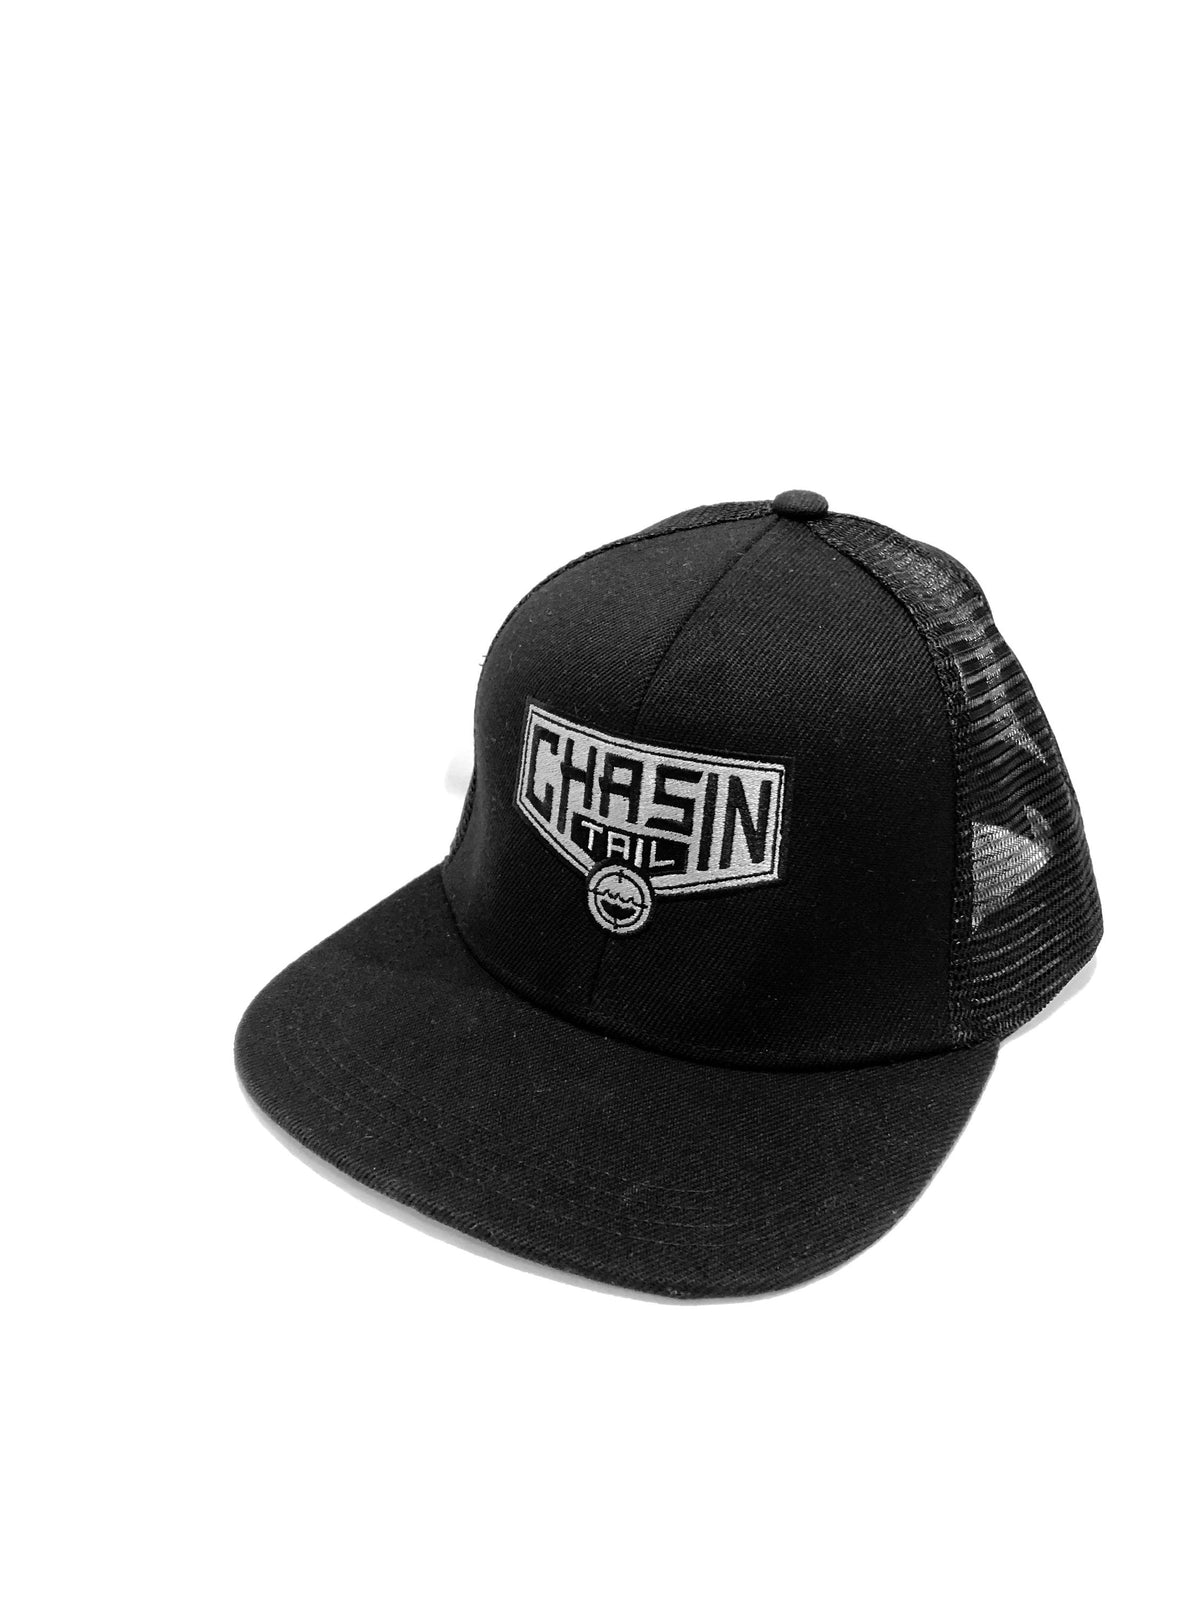 Chasin Tail - Snapback Flat Brim Hat